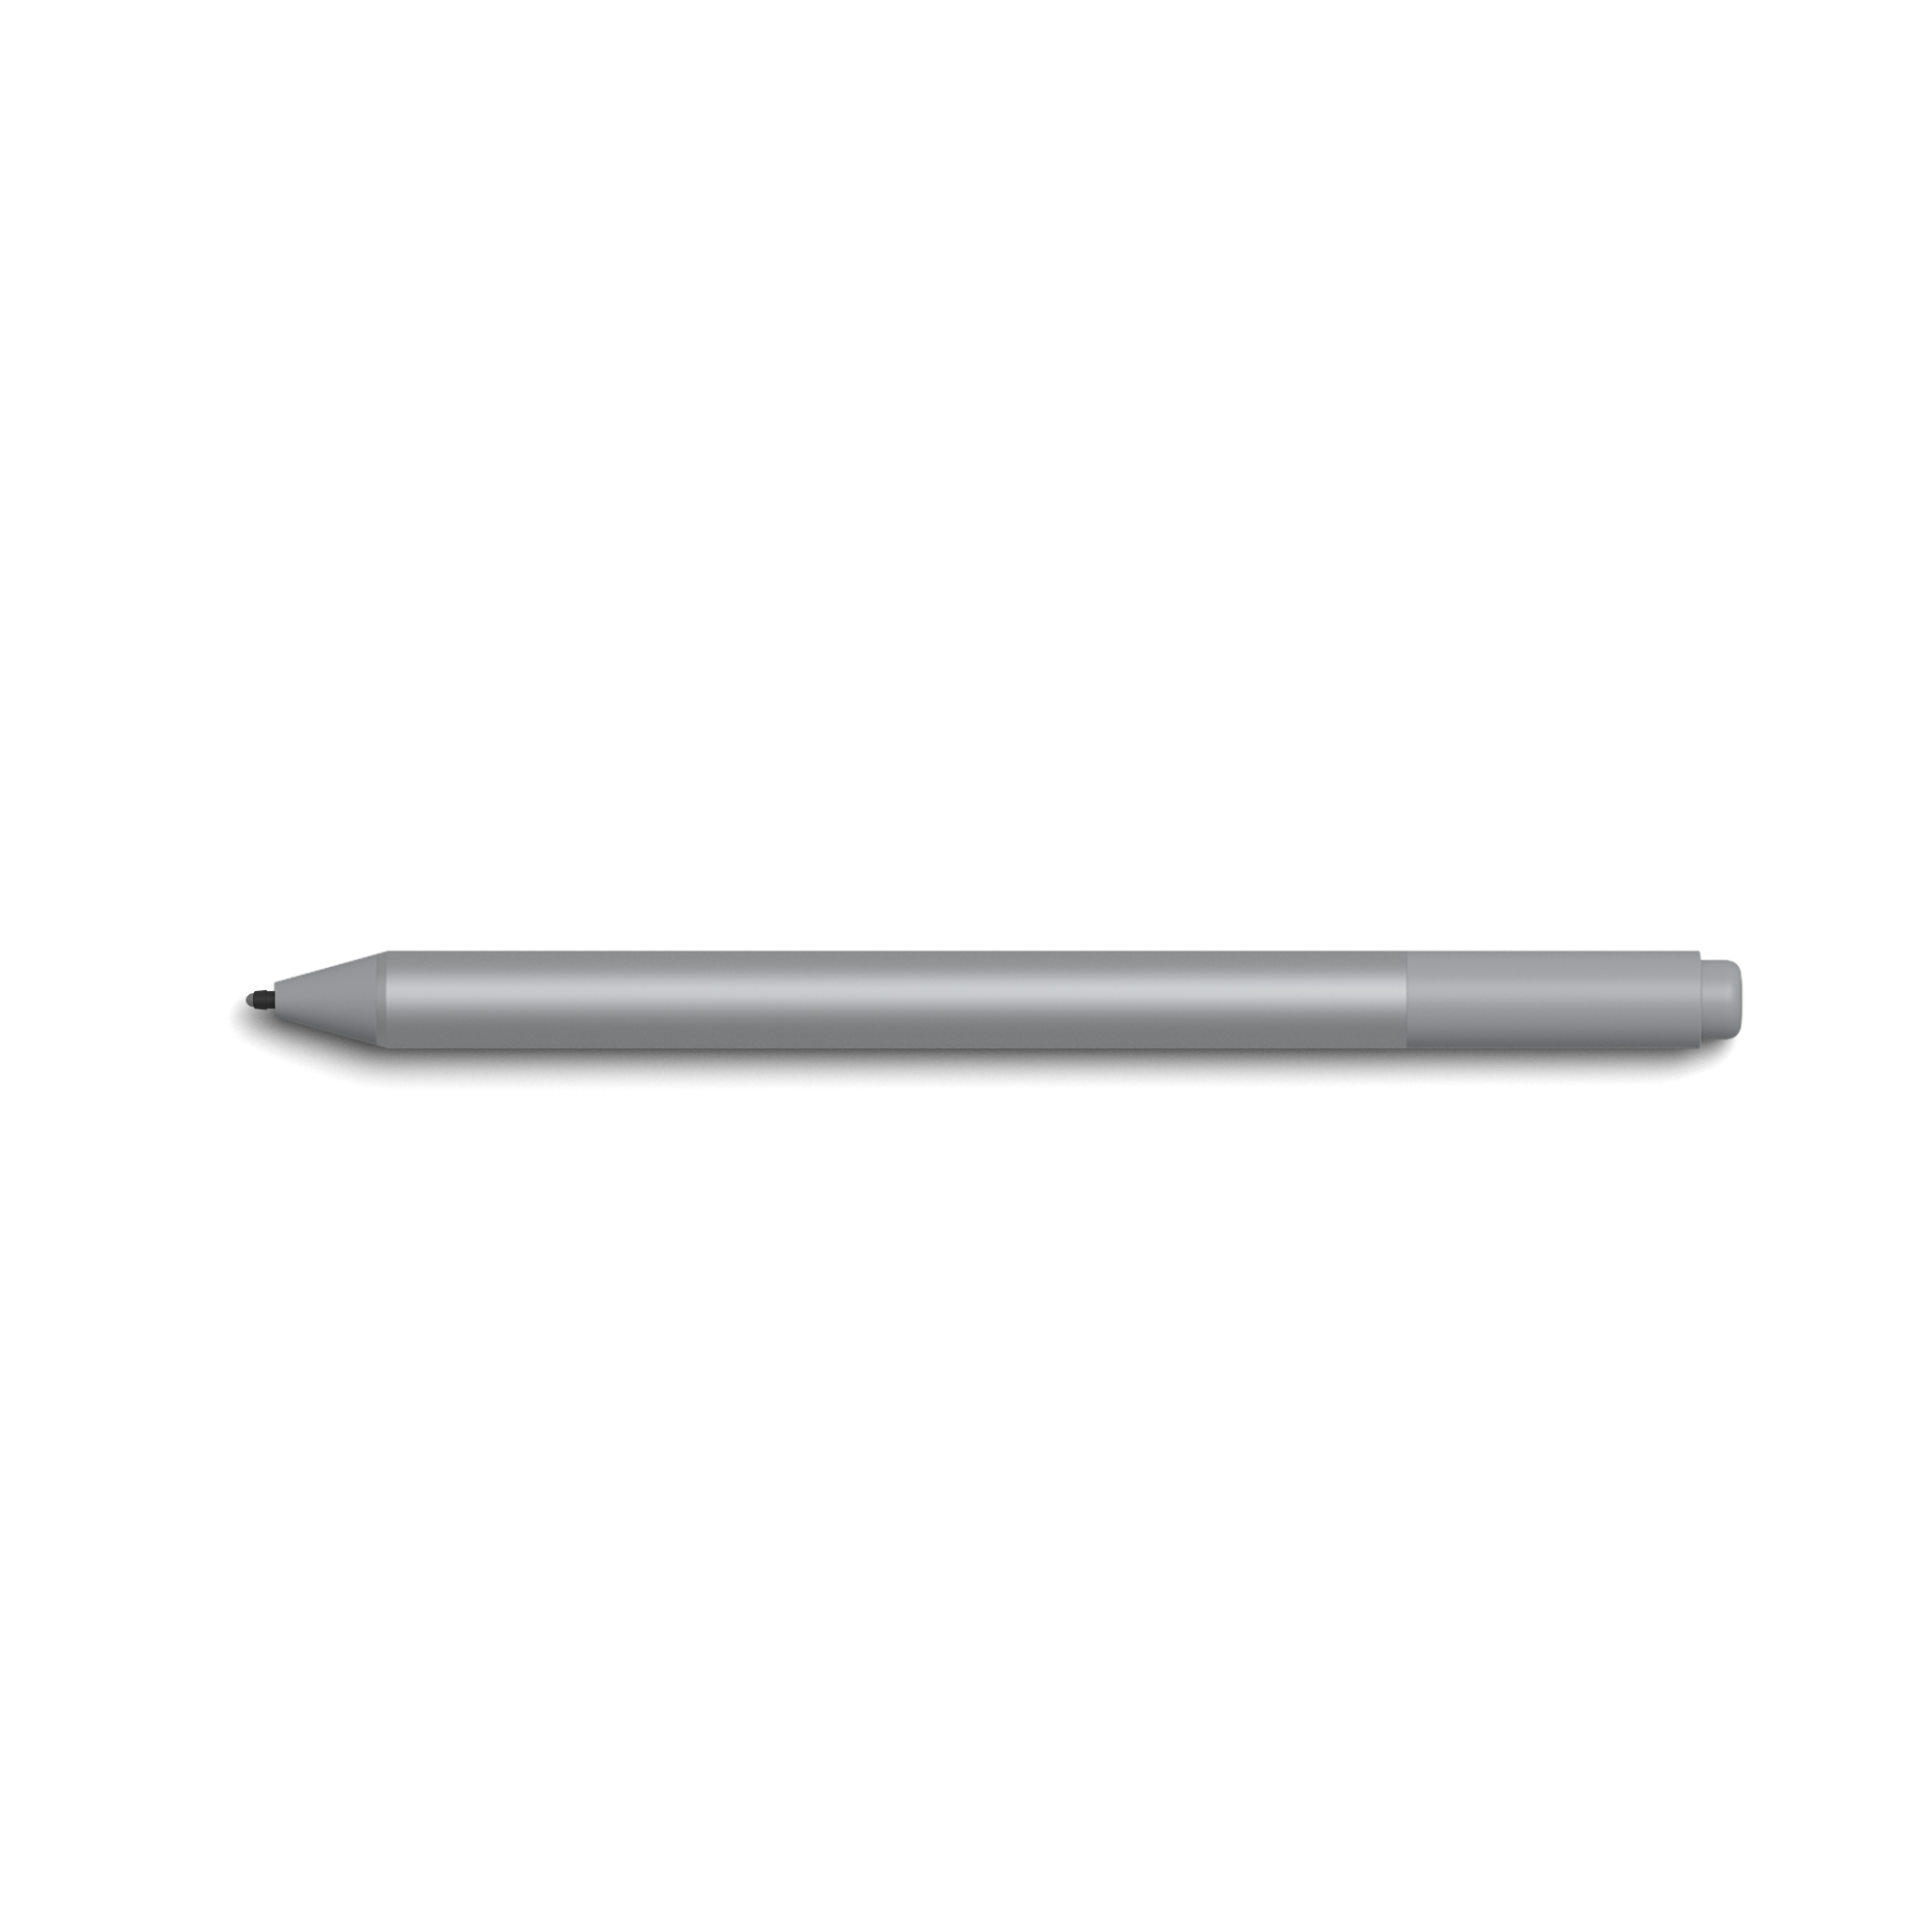 surface pen